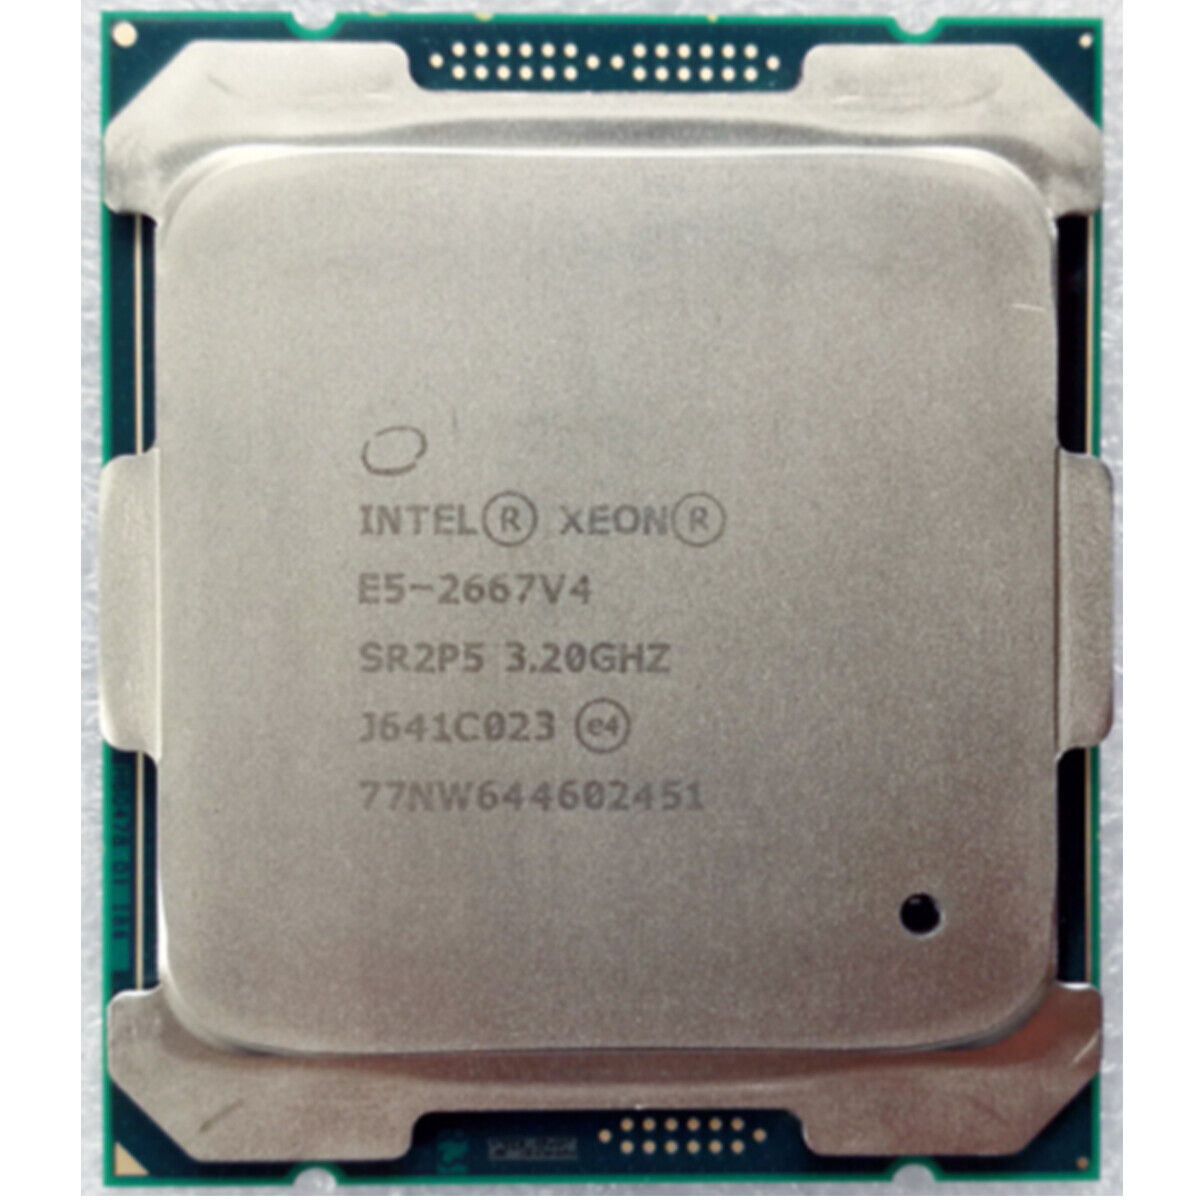 Intel Xeon E5-2690 V4 E5-2686 V4 E5-2683 V4 E5-2680 V4 E5-2667 V4 LGA2011-3 CPU